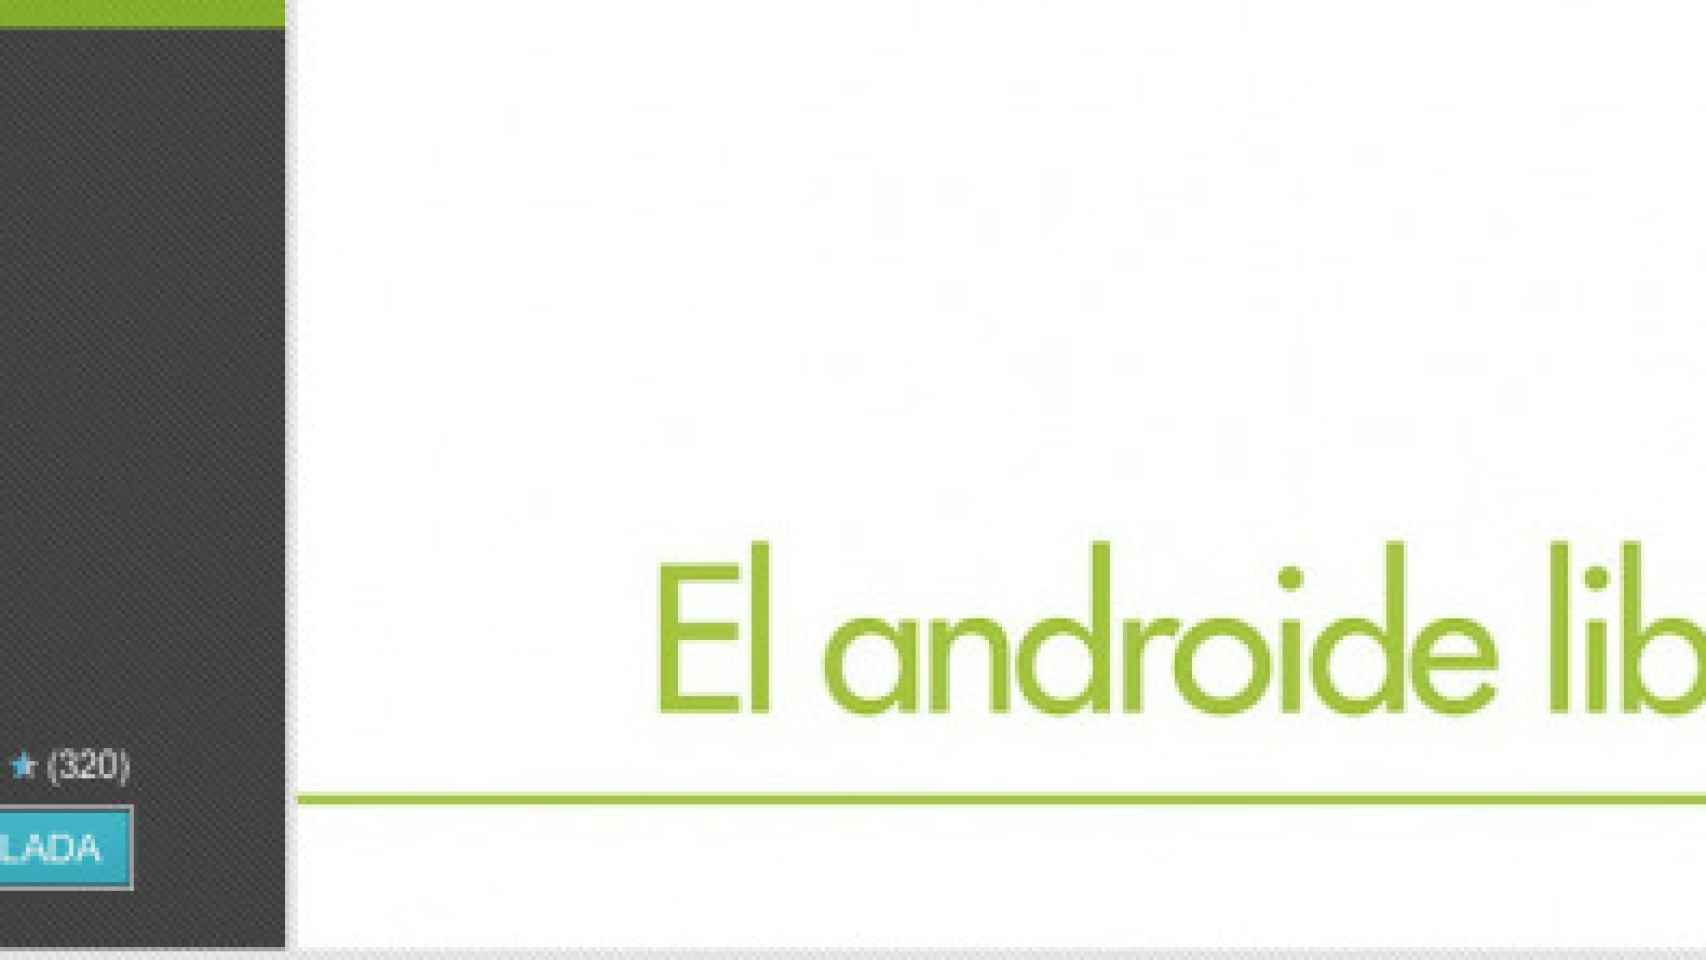 La aplicación de El Androide Libre se actualiza con importantes mejoras